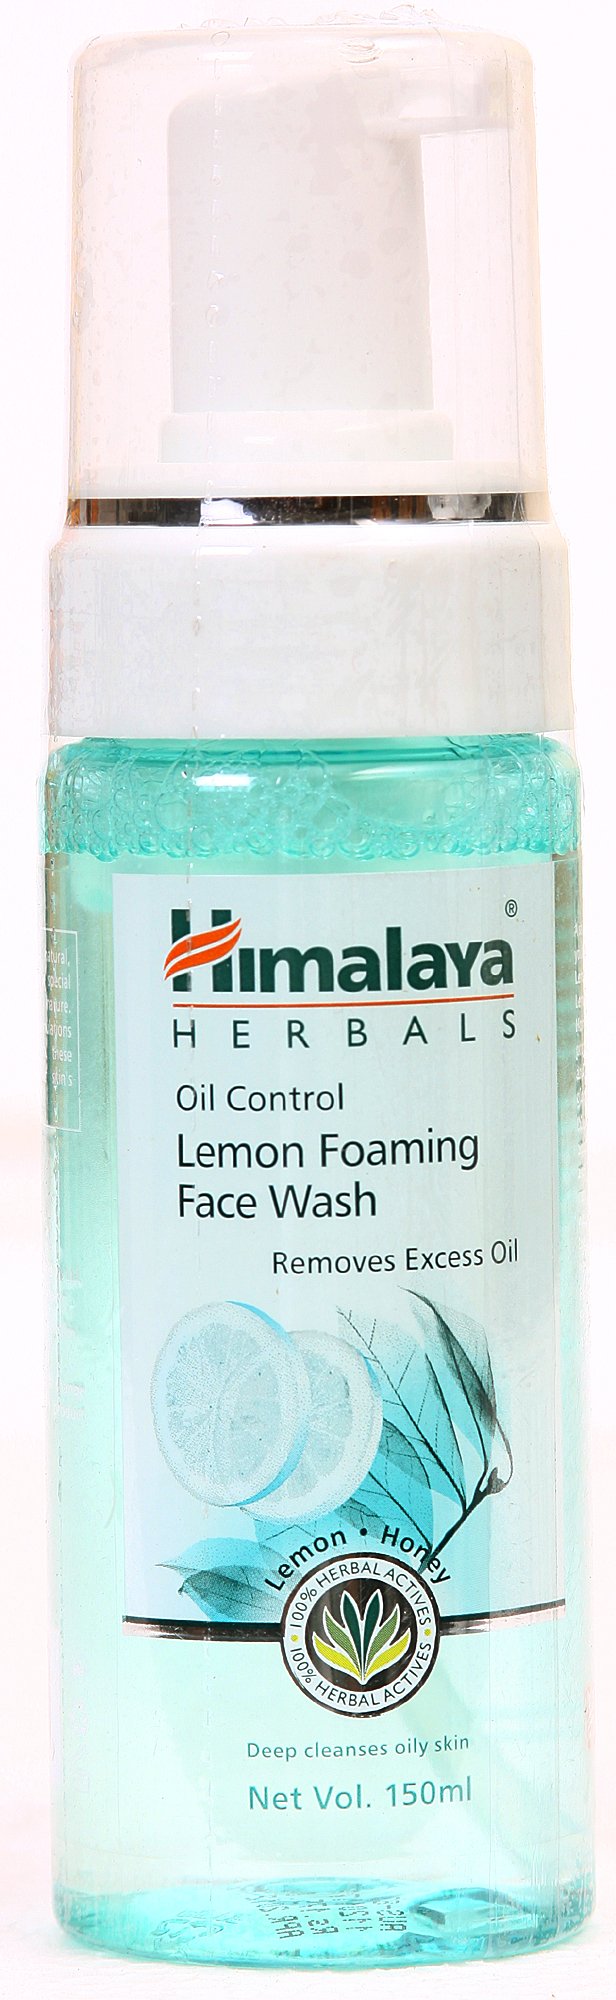 Himalaya Herbals Oil Control Lemon Foaming Face Wash - book cover